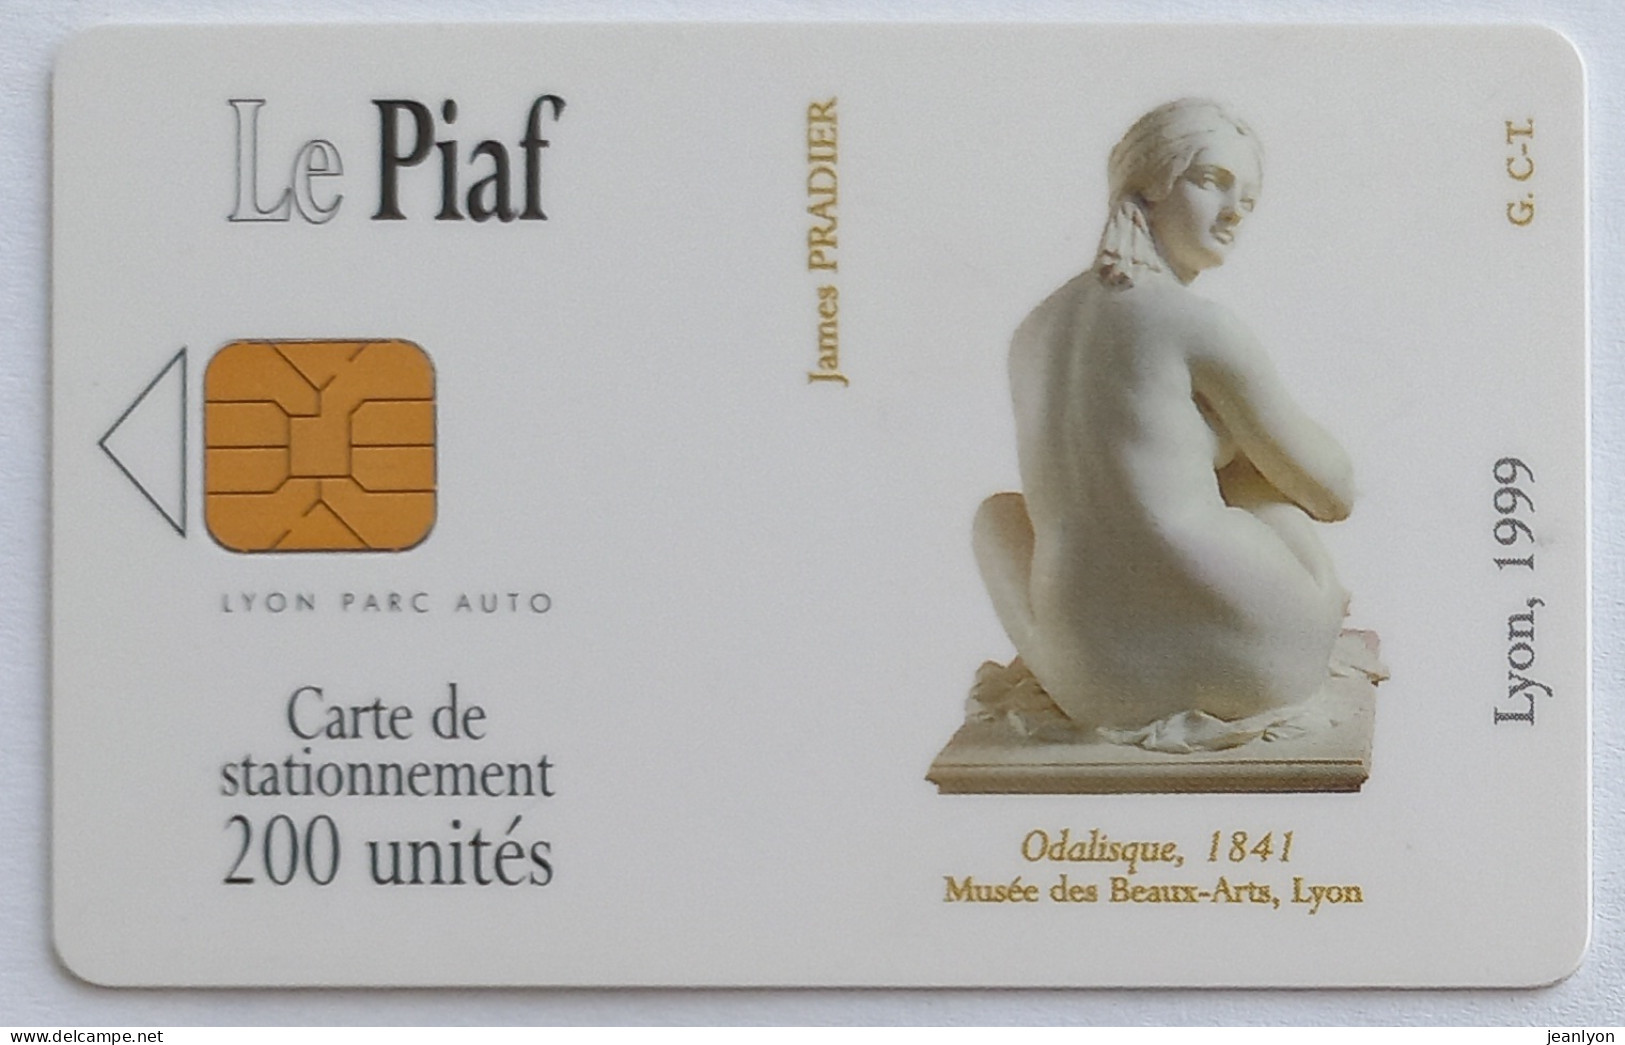 PIAF LYON - Carte Stationnement 1999 - ODALISQUE - Art / Statue - Musée Des Beaux Arts Lyon - Cartes De Stationnement, PIAF